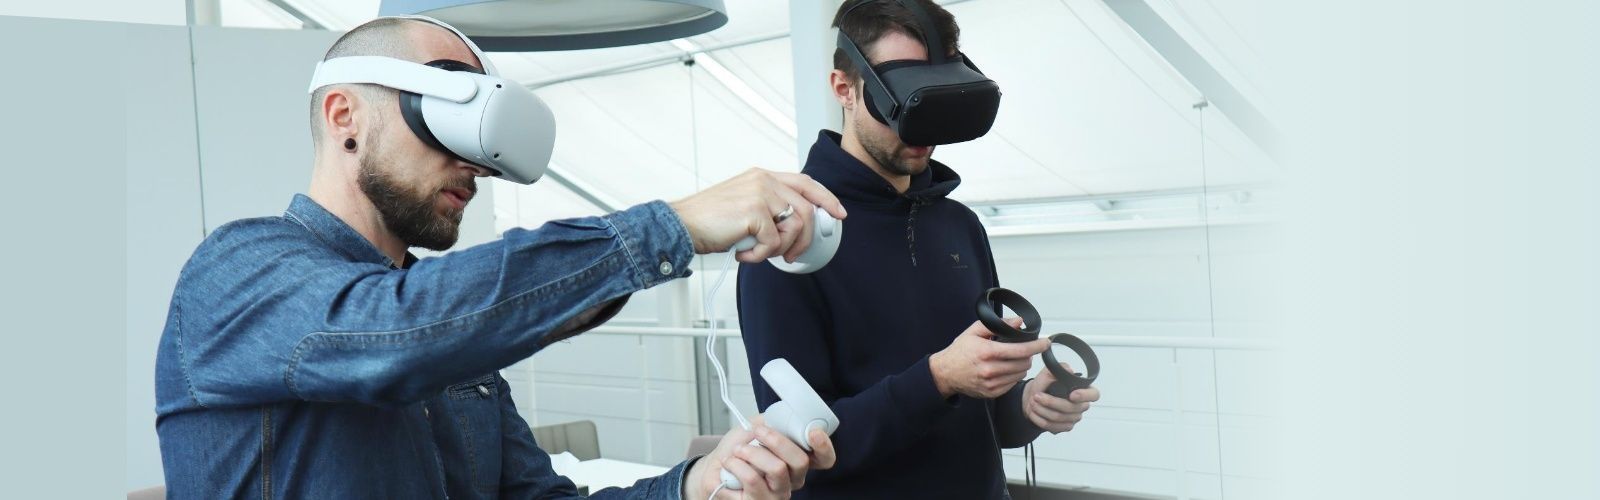 VR Brillen werden von zwei Personen benutzt